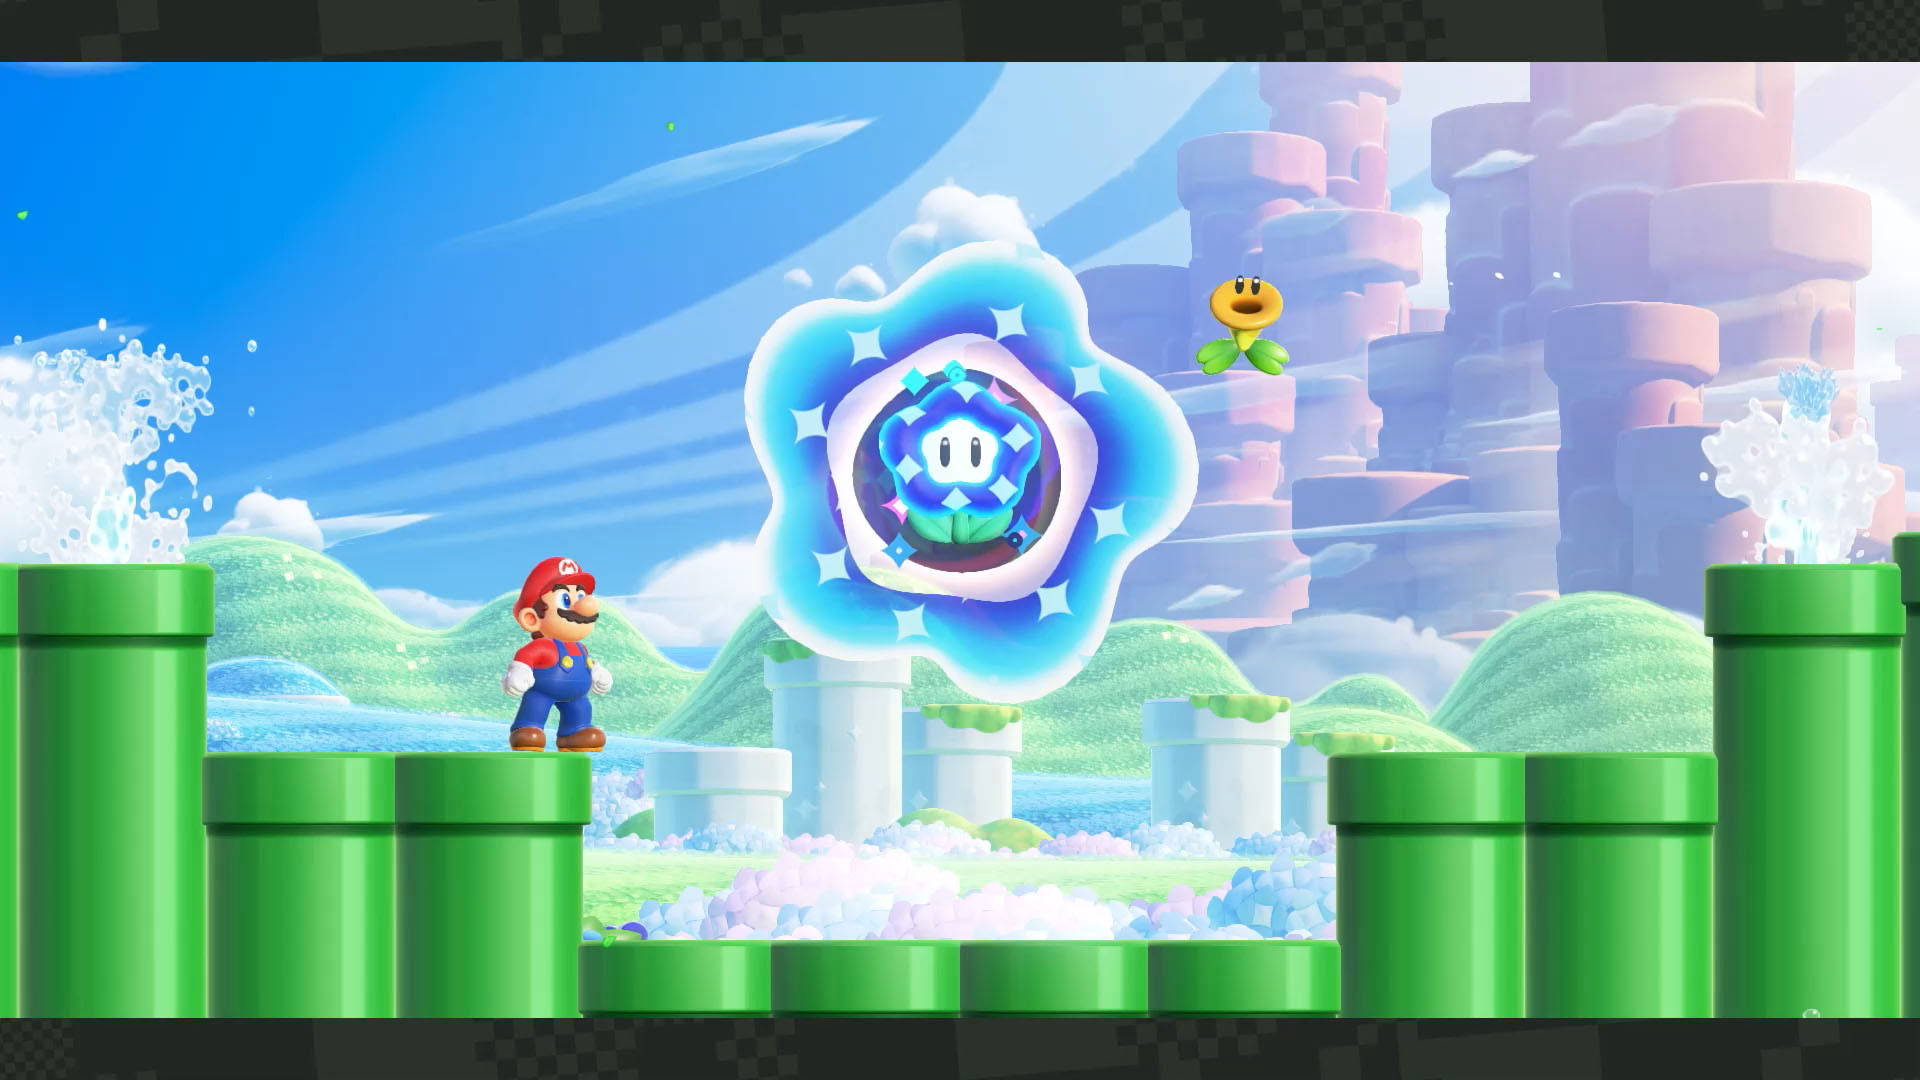 Daniel #OfertasNintendo Reenlsober 👾 on X: 🚨IMPORTANTE A 2° onda dos  jogos do Mario já iniciou na eShop, mas recomendo aguardarem um pouco, pois  a @Nuuvem vai dar um super presente para